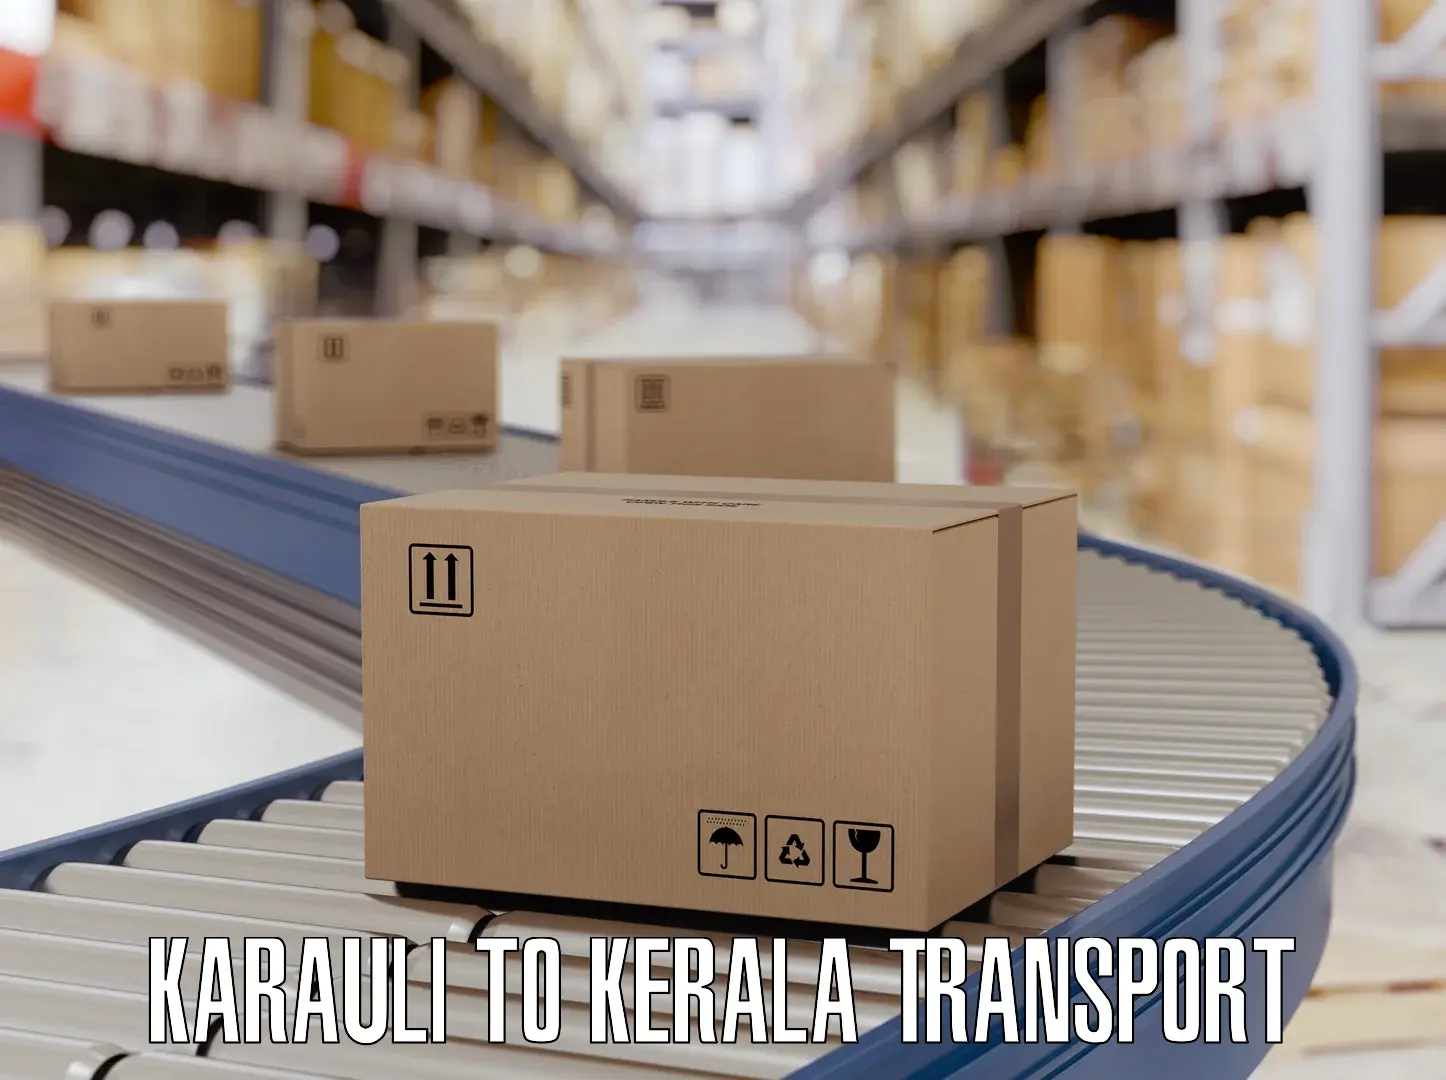 Furniture transport service Karauli to Manthuka